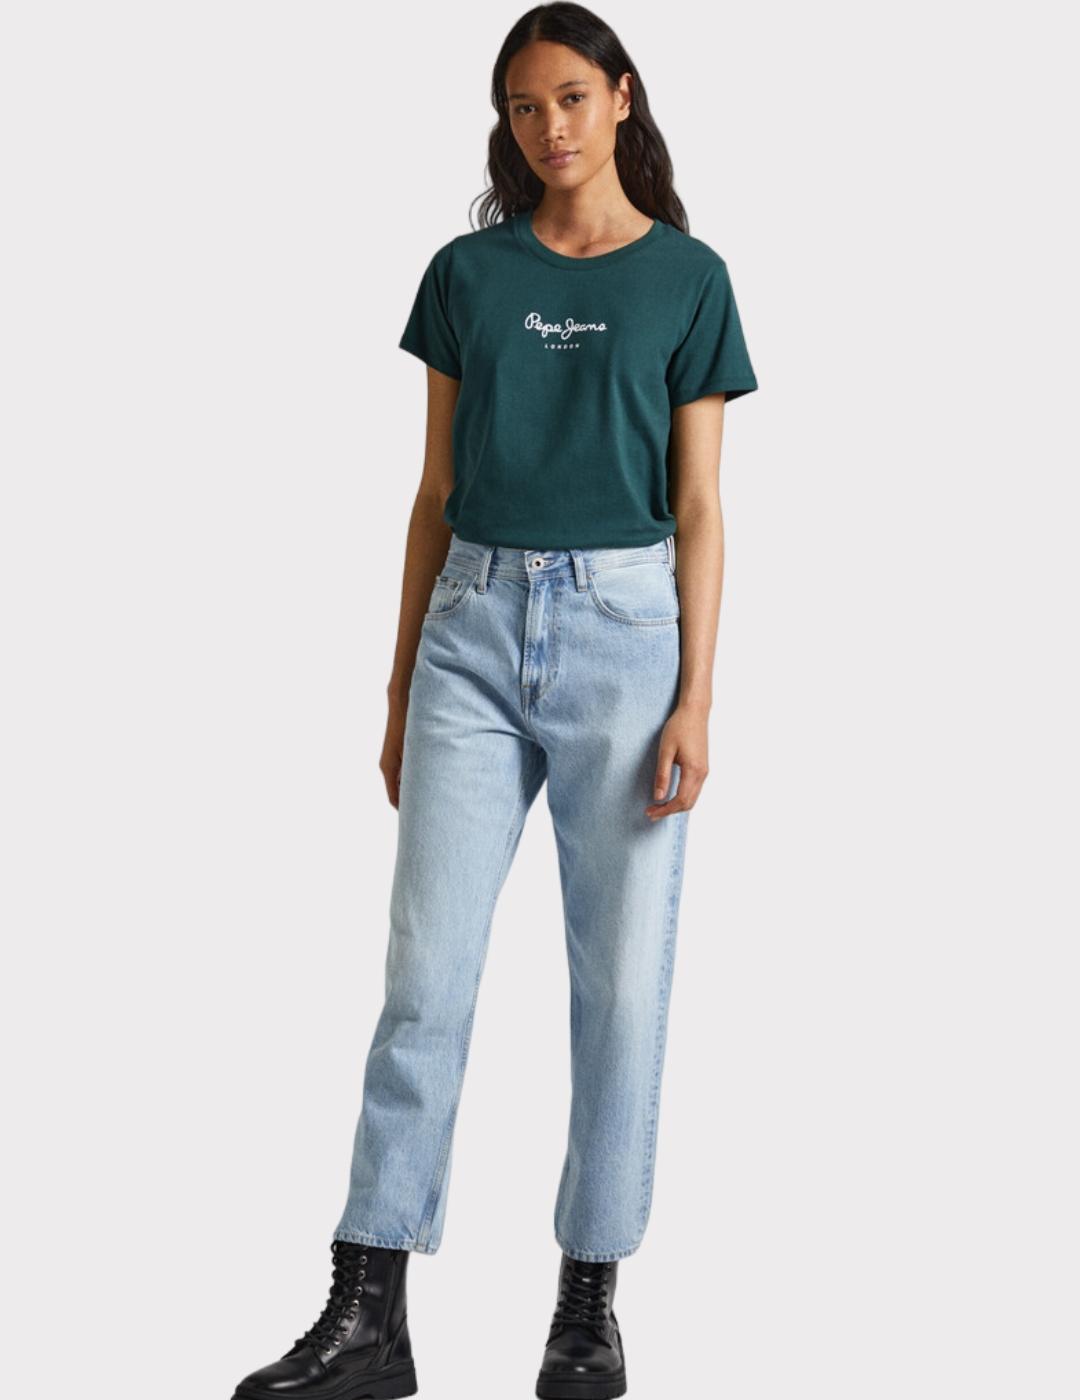 Camiseta Pepe Jeans verde Wendys mujer